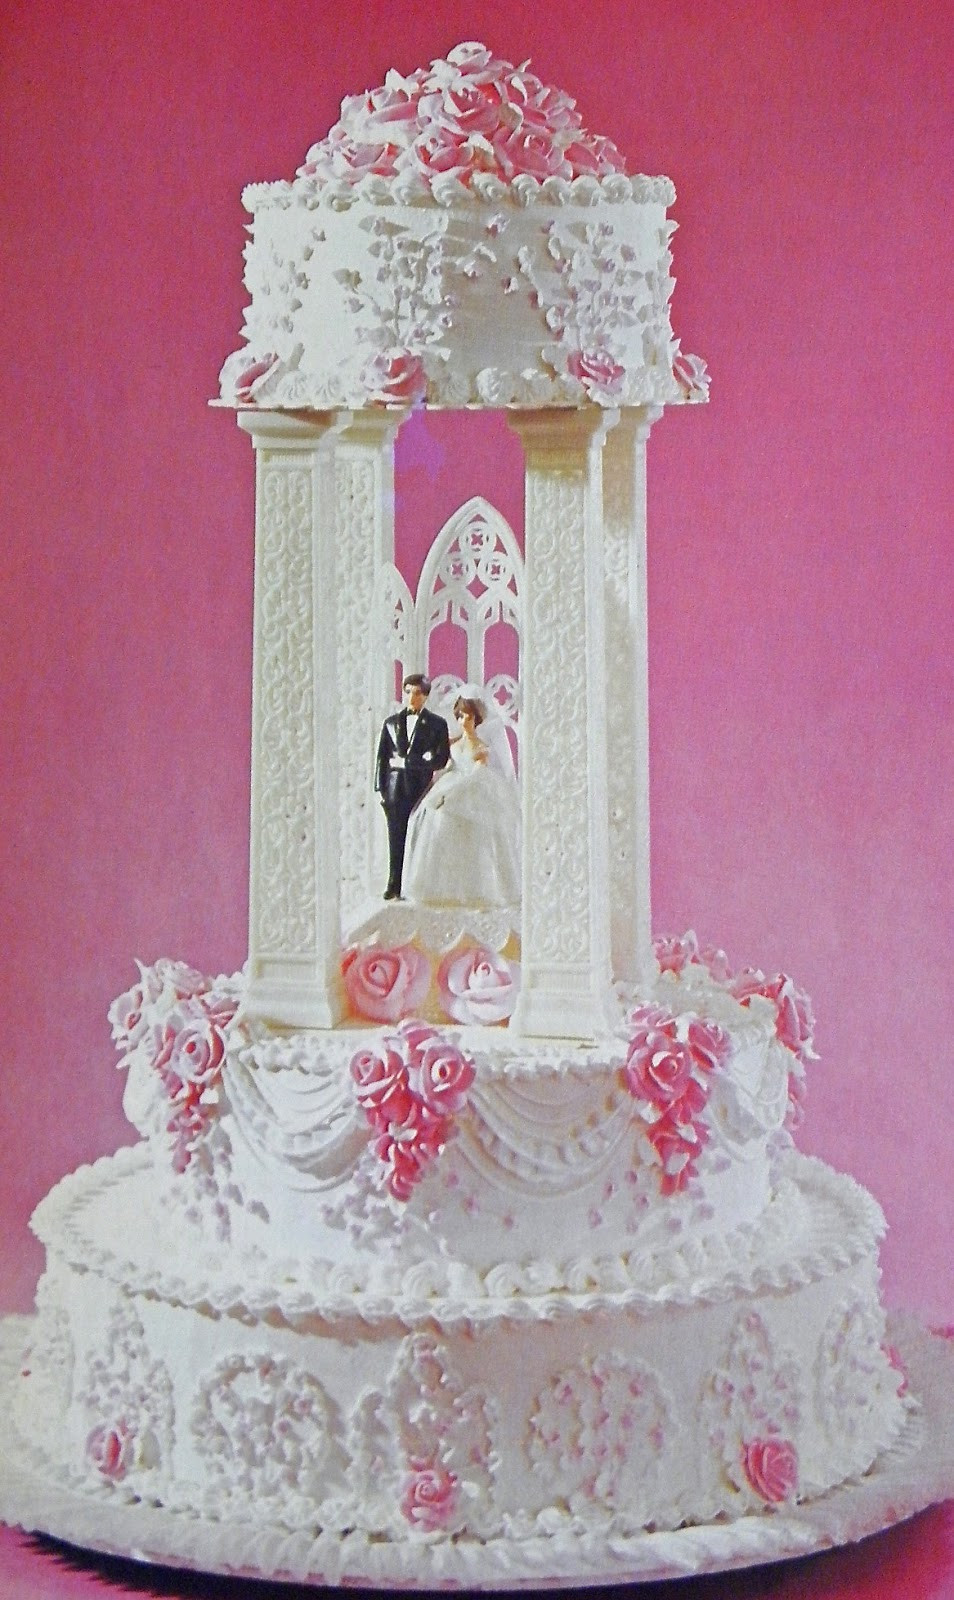 Wilton Wedding Cakes
 Good Things by David Vintage Wilton Wedding Cakes